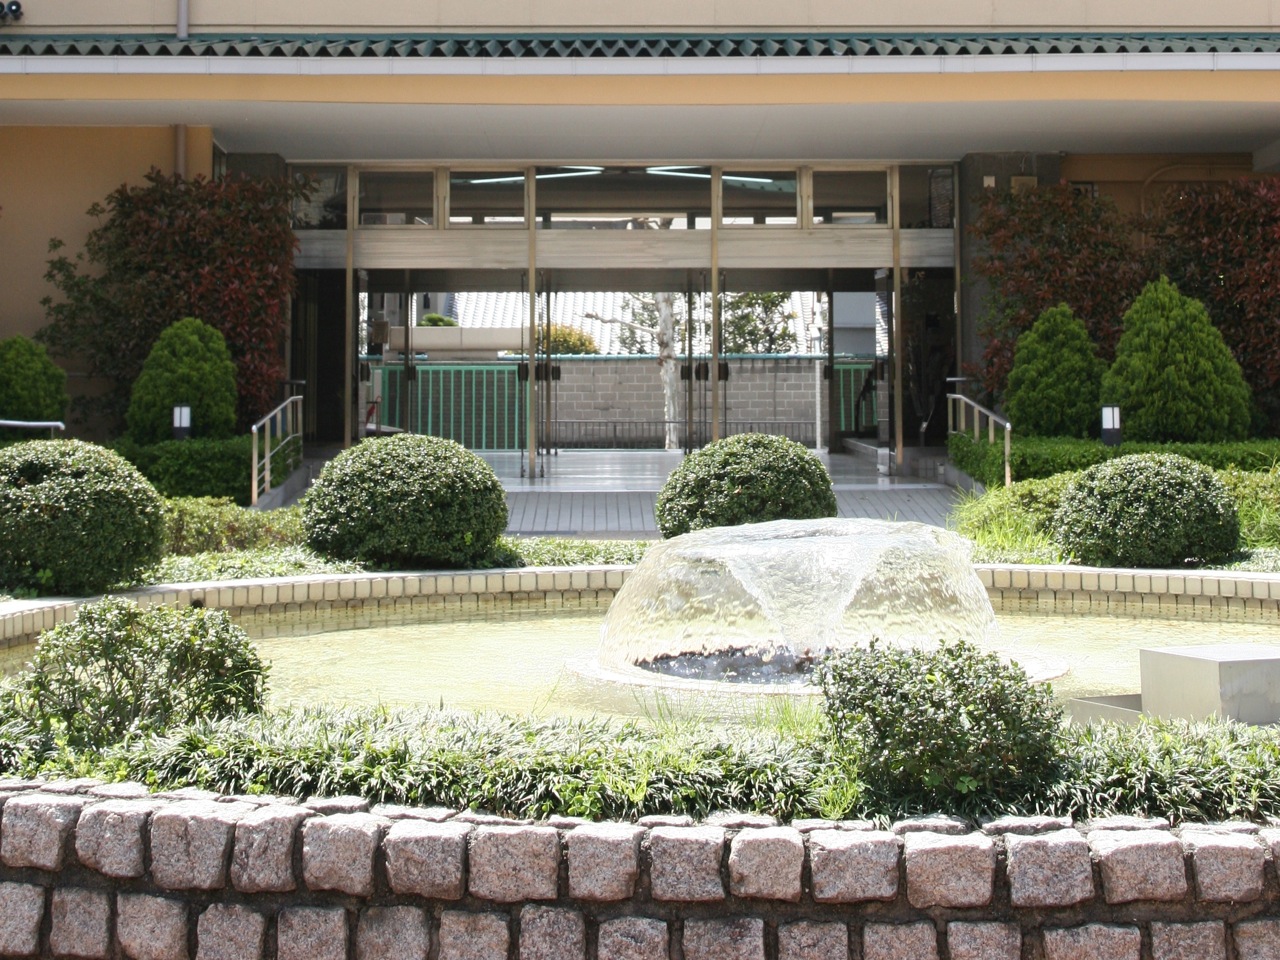 中庭噴水：キャンパスは中庭を囲むように校舎が配置され、中央には噴水があります。噴水は京外専のシンボル的存在となっています。